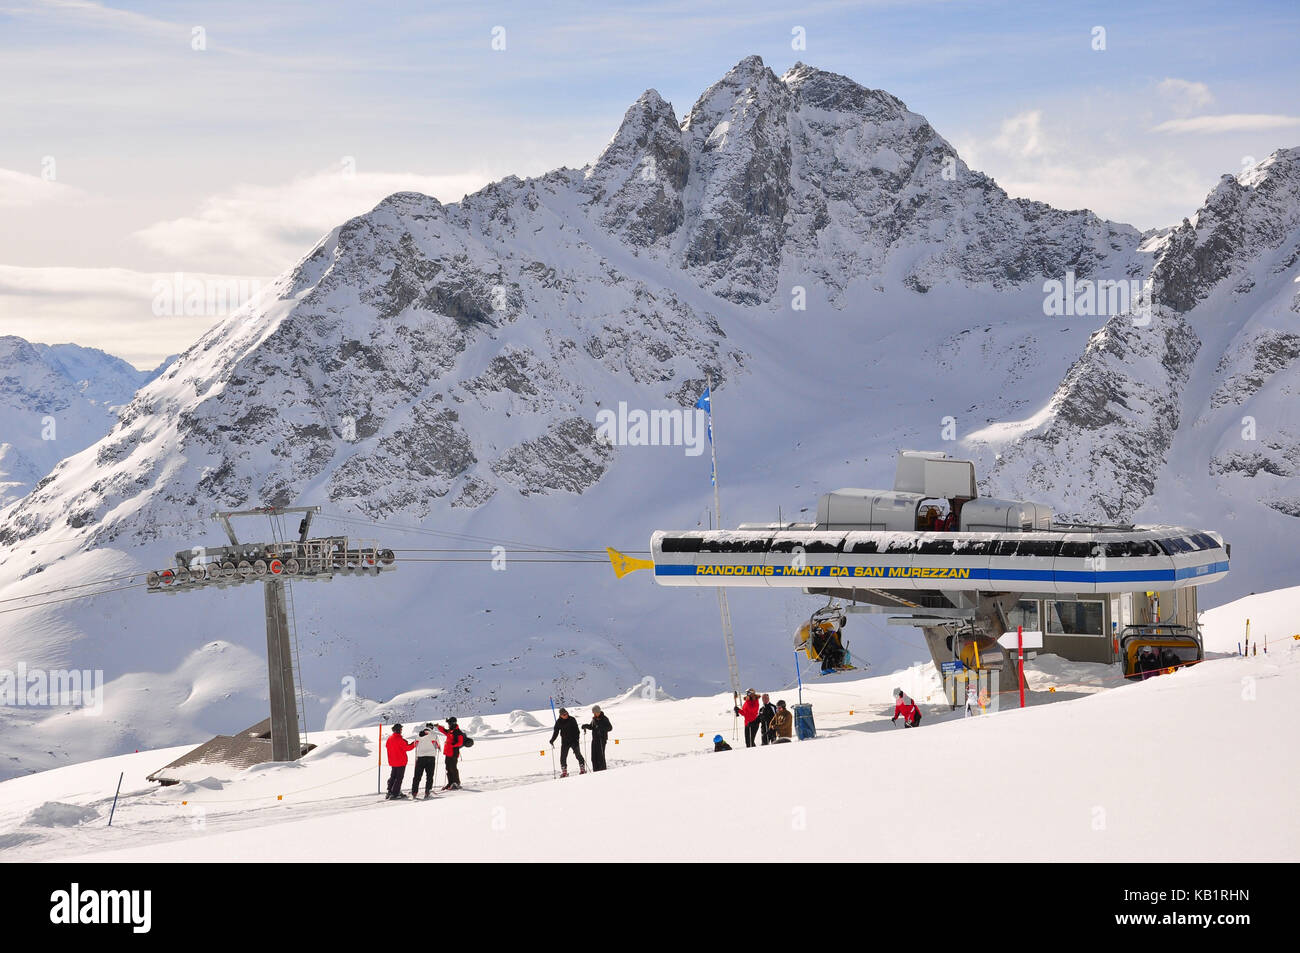 La Suisse, canton des Grisons, l'Engadine, st. MORITZ, corviglia, piste de ski, murezzan, skieur, hiver, Banque D'Images